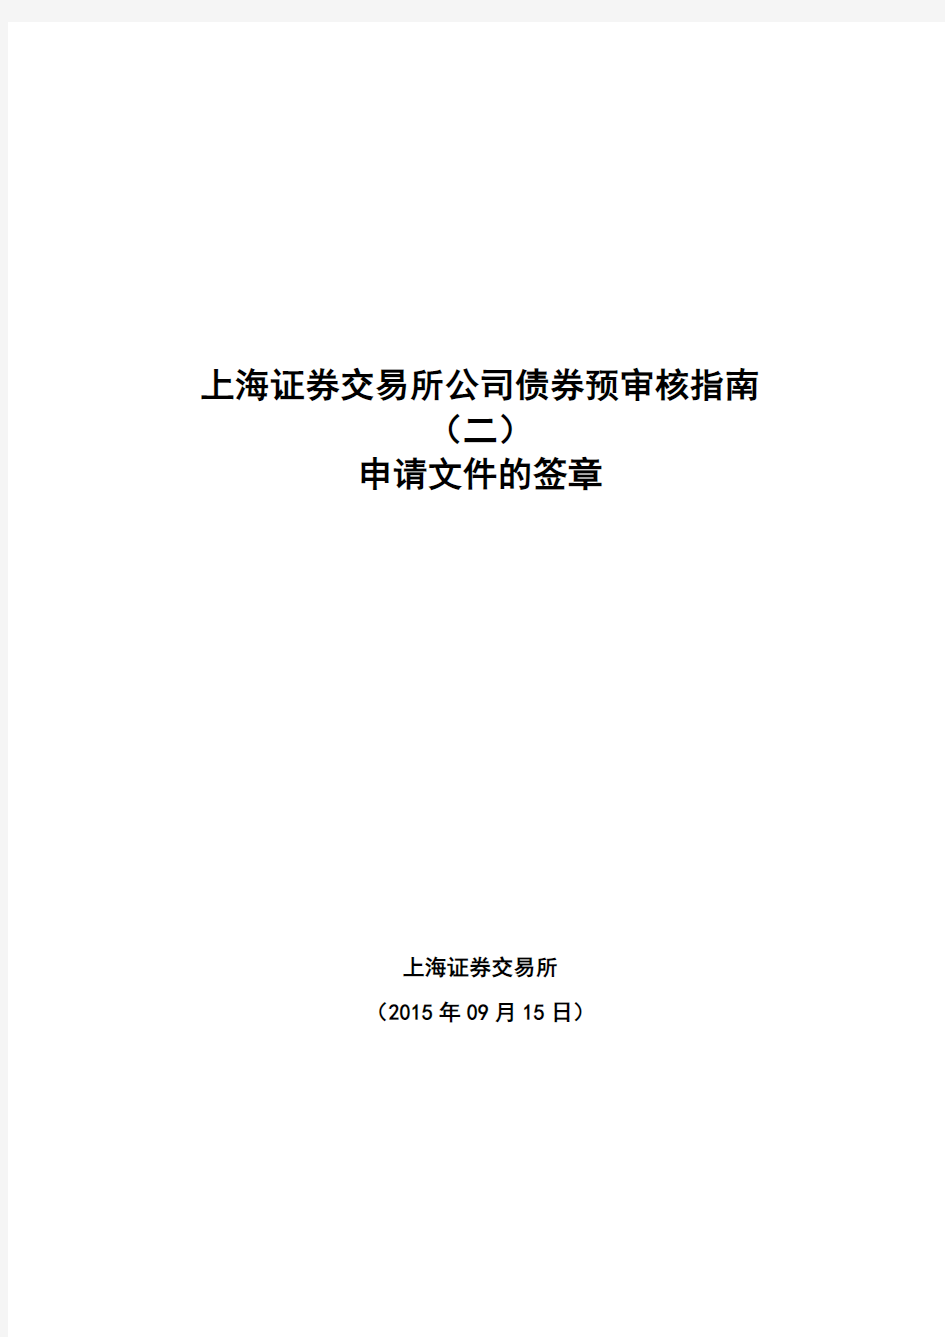 上海证券交易所公司债券预审核指南(二)申请文件的签章--2015.9.15